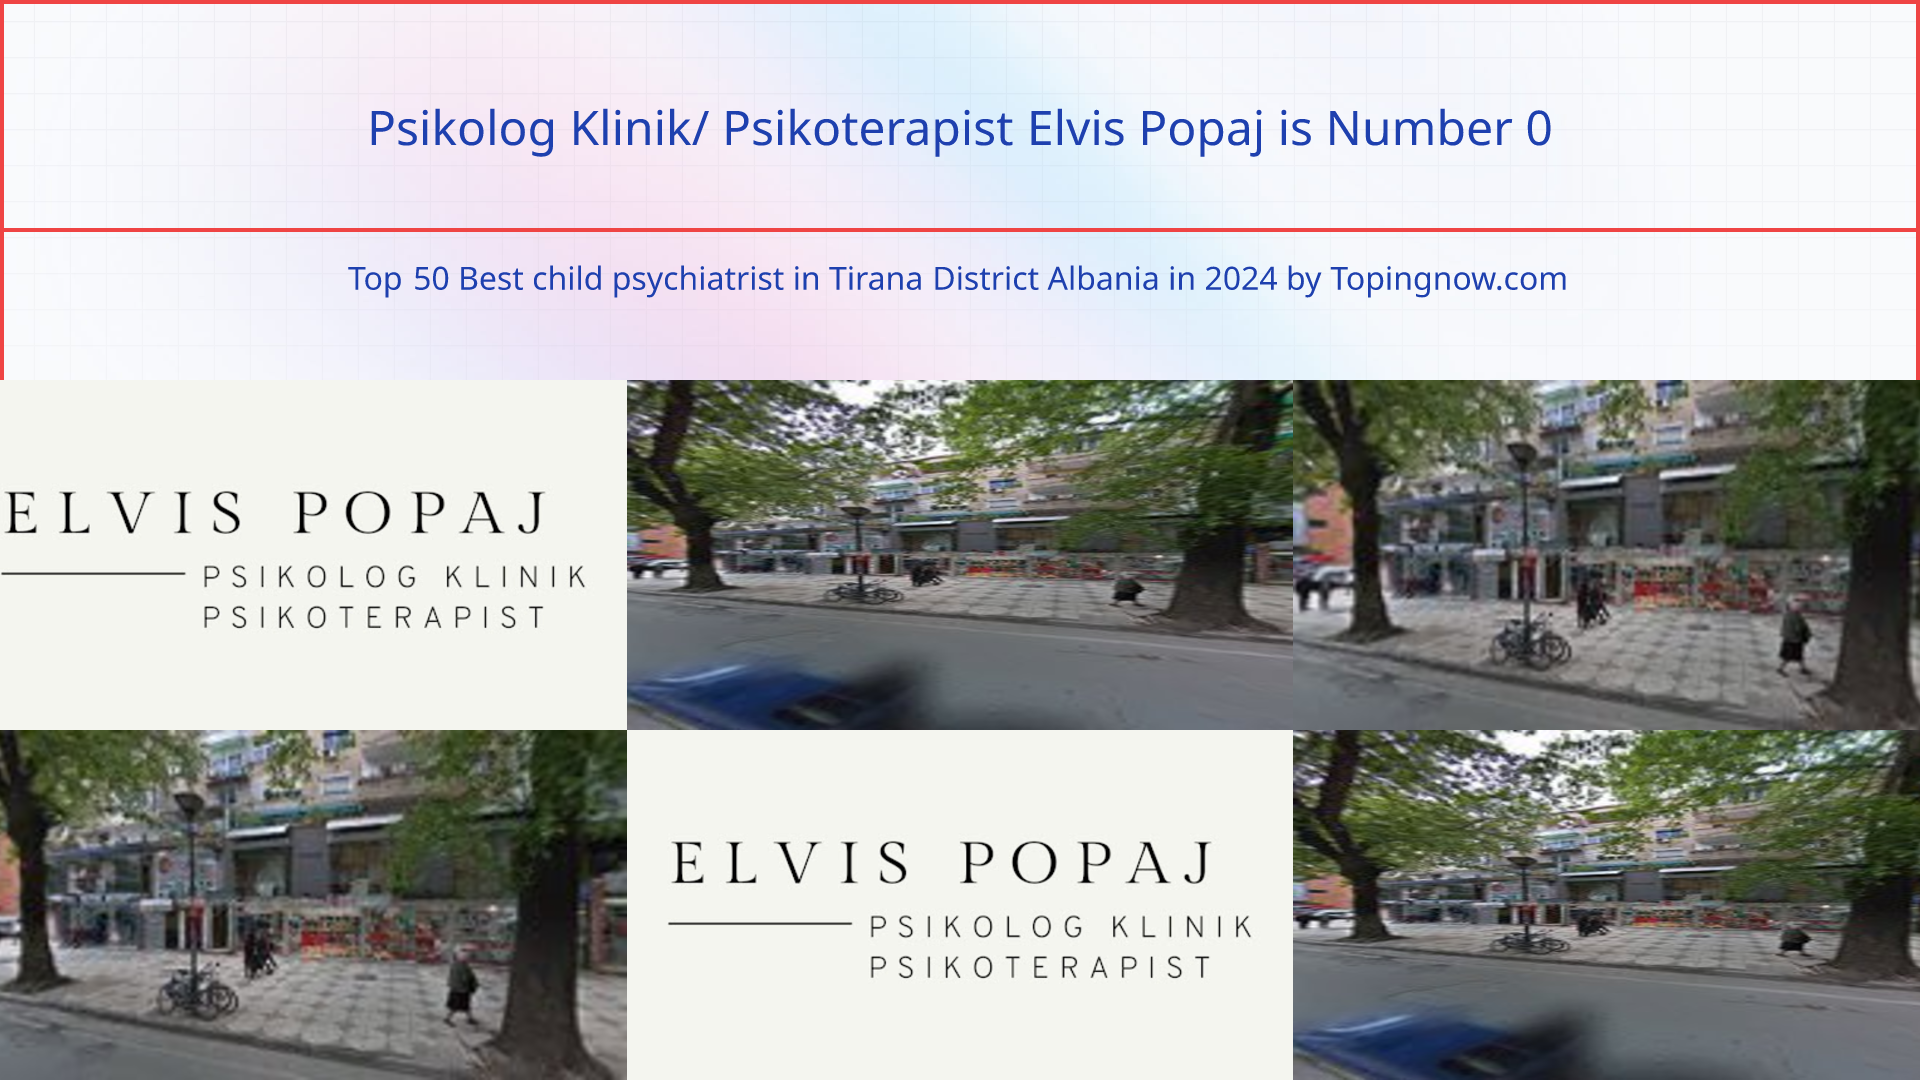 Psikolog Klinik/ Psikoterapist Elvis Popaj: Top 50 Best child psychiatrist in Tirana District Albania in 2024